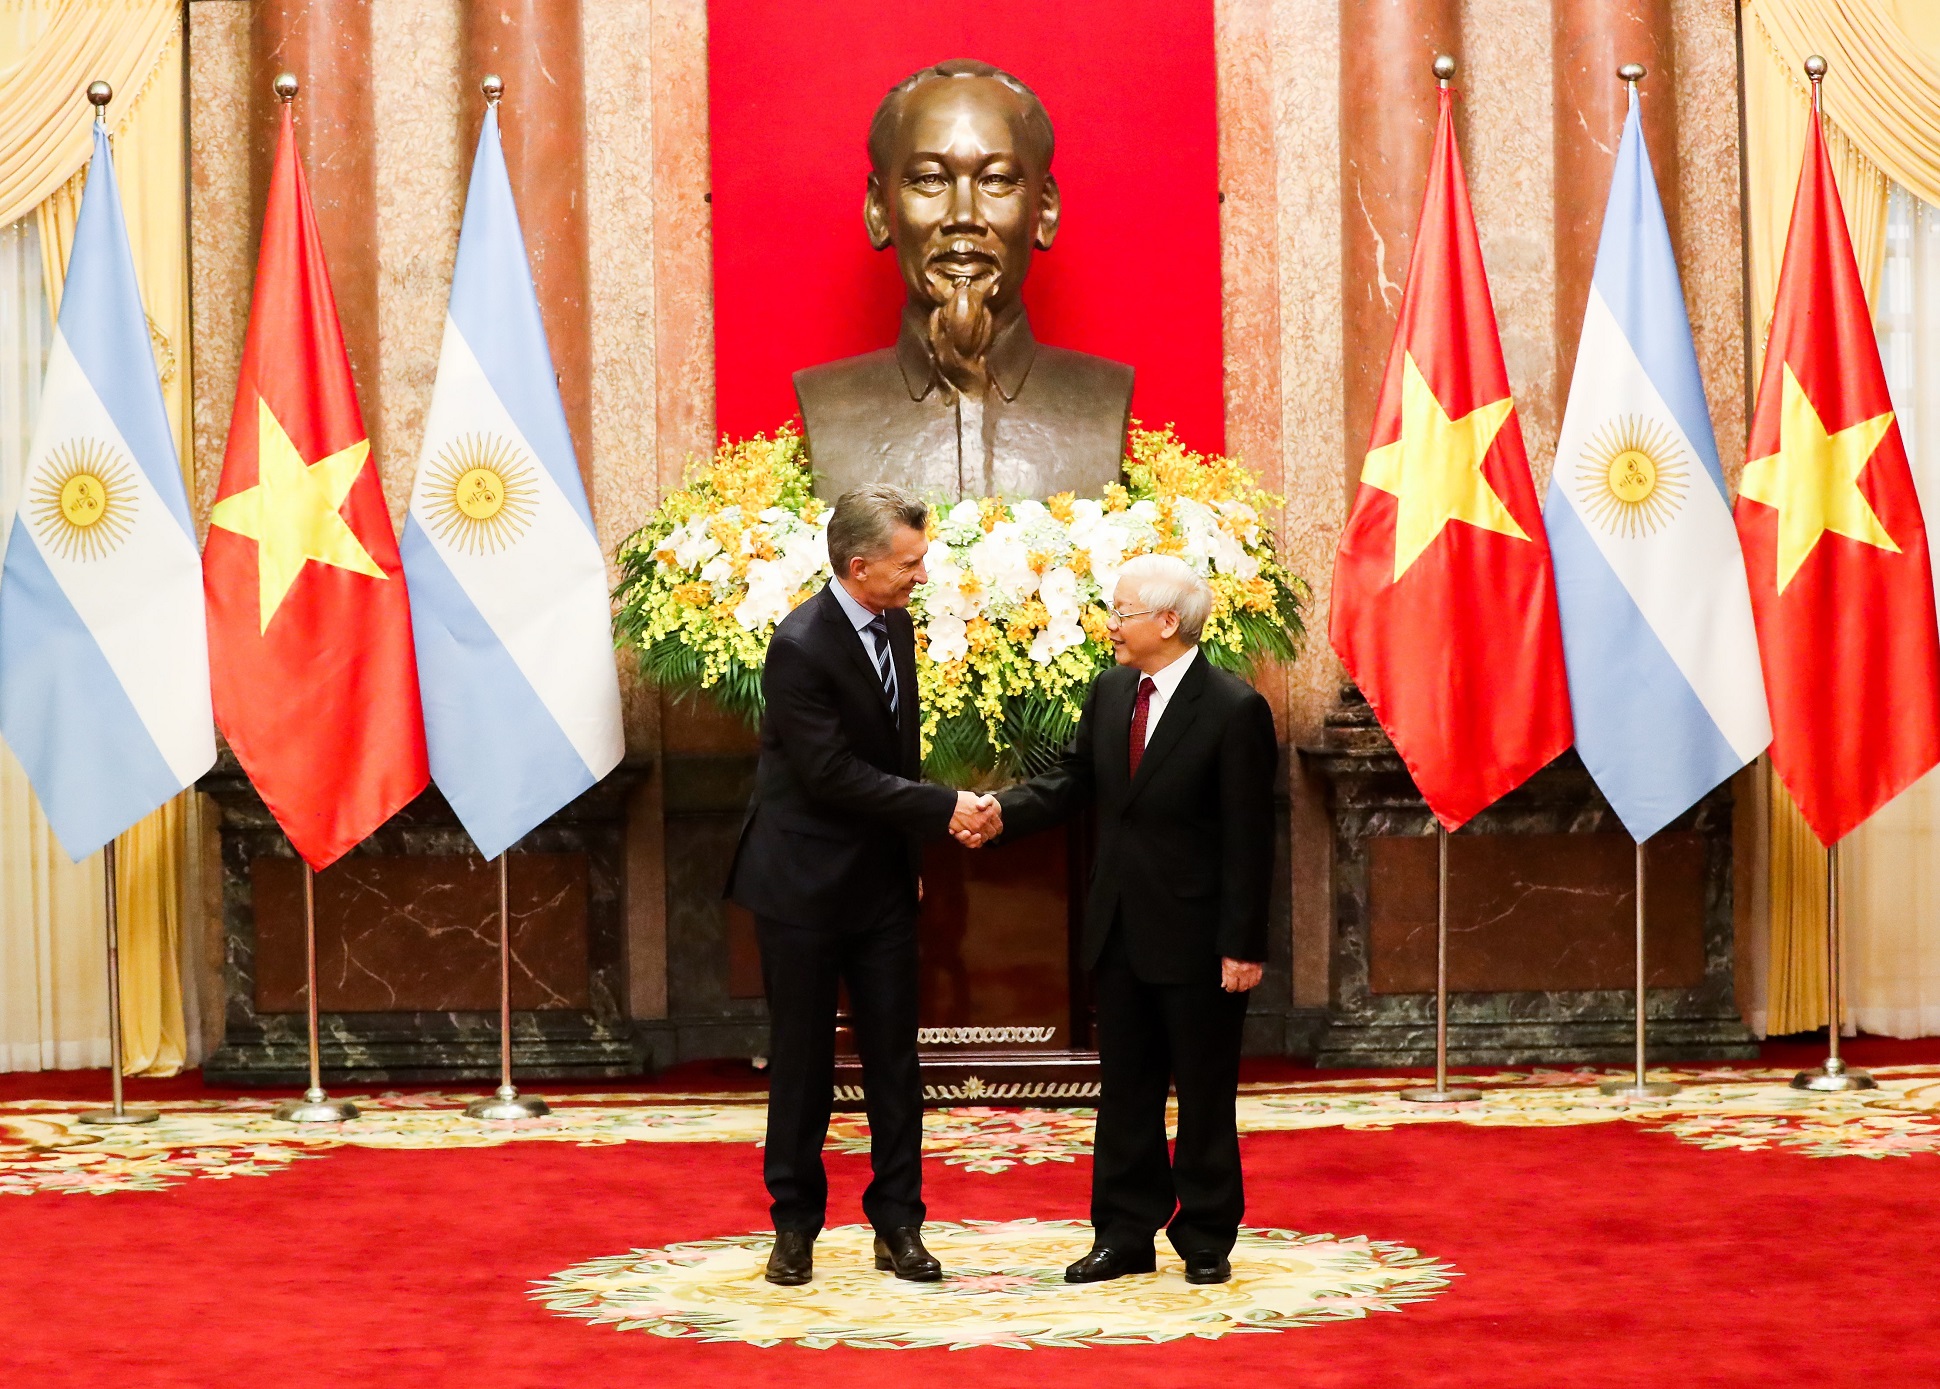 La Argentina y Vietnam acordaron seguir trabajando para alcanzar una asociación integral 